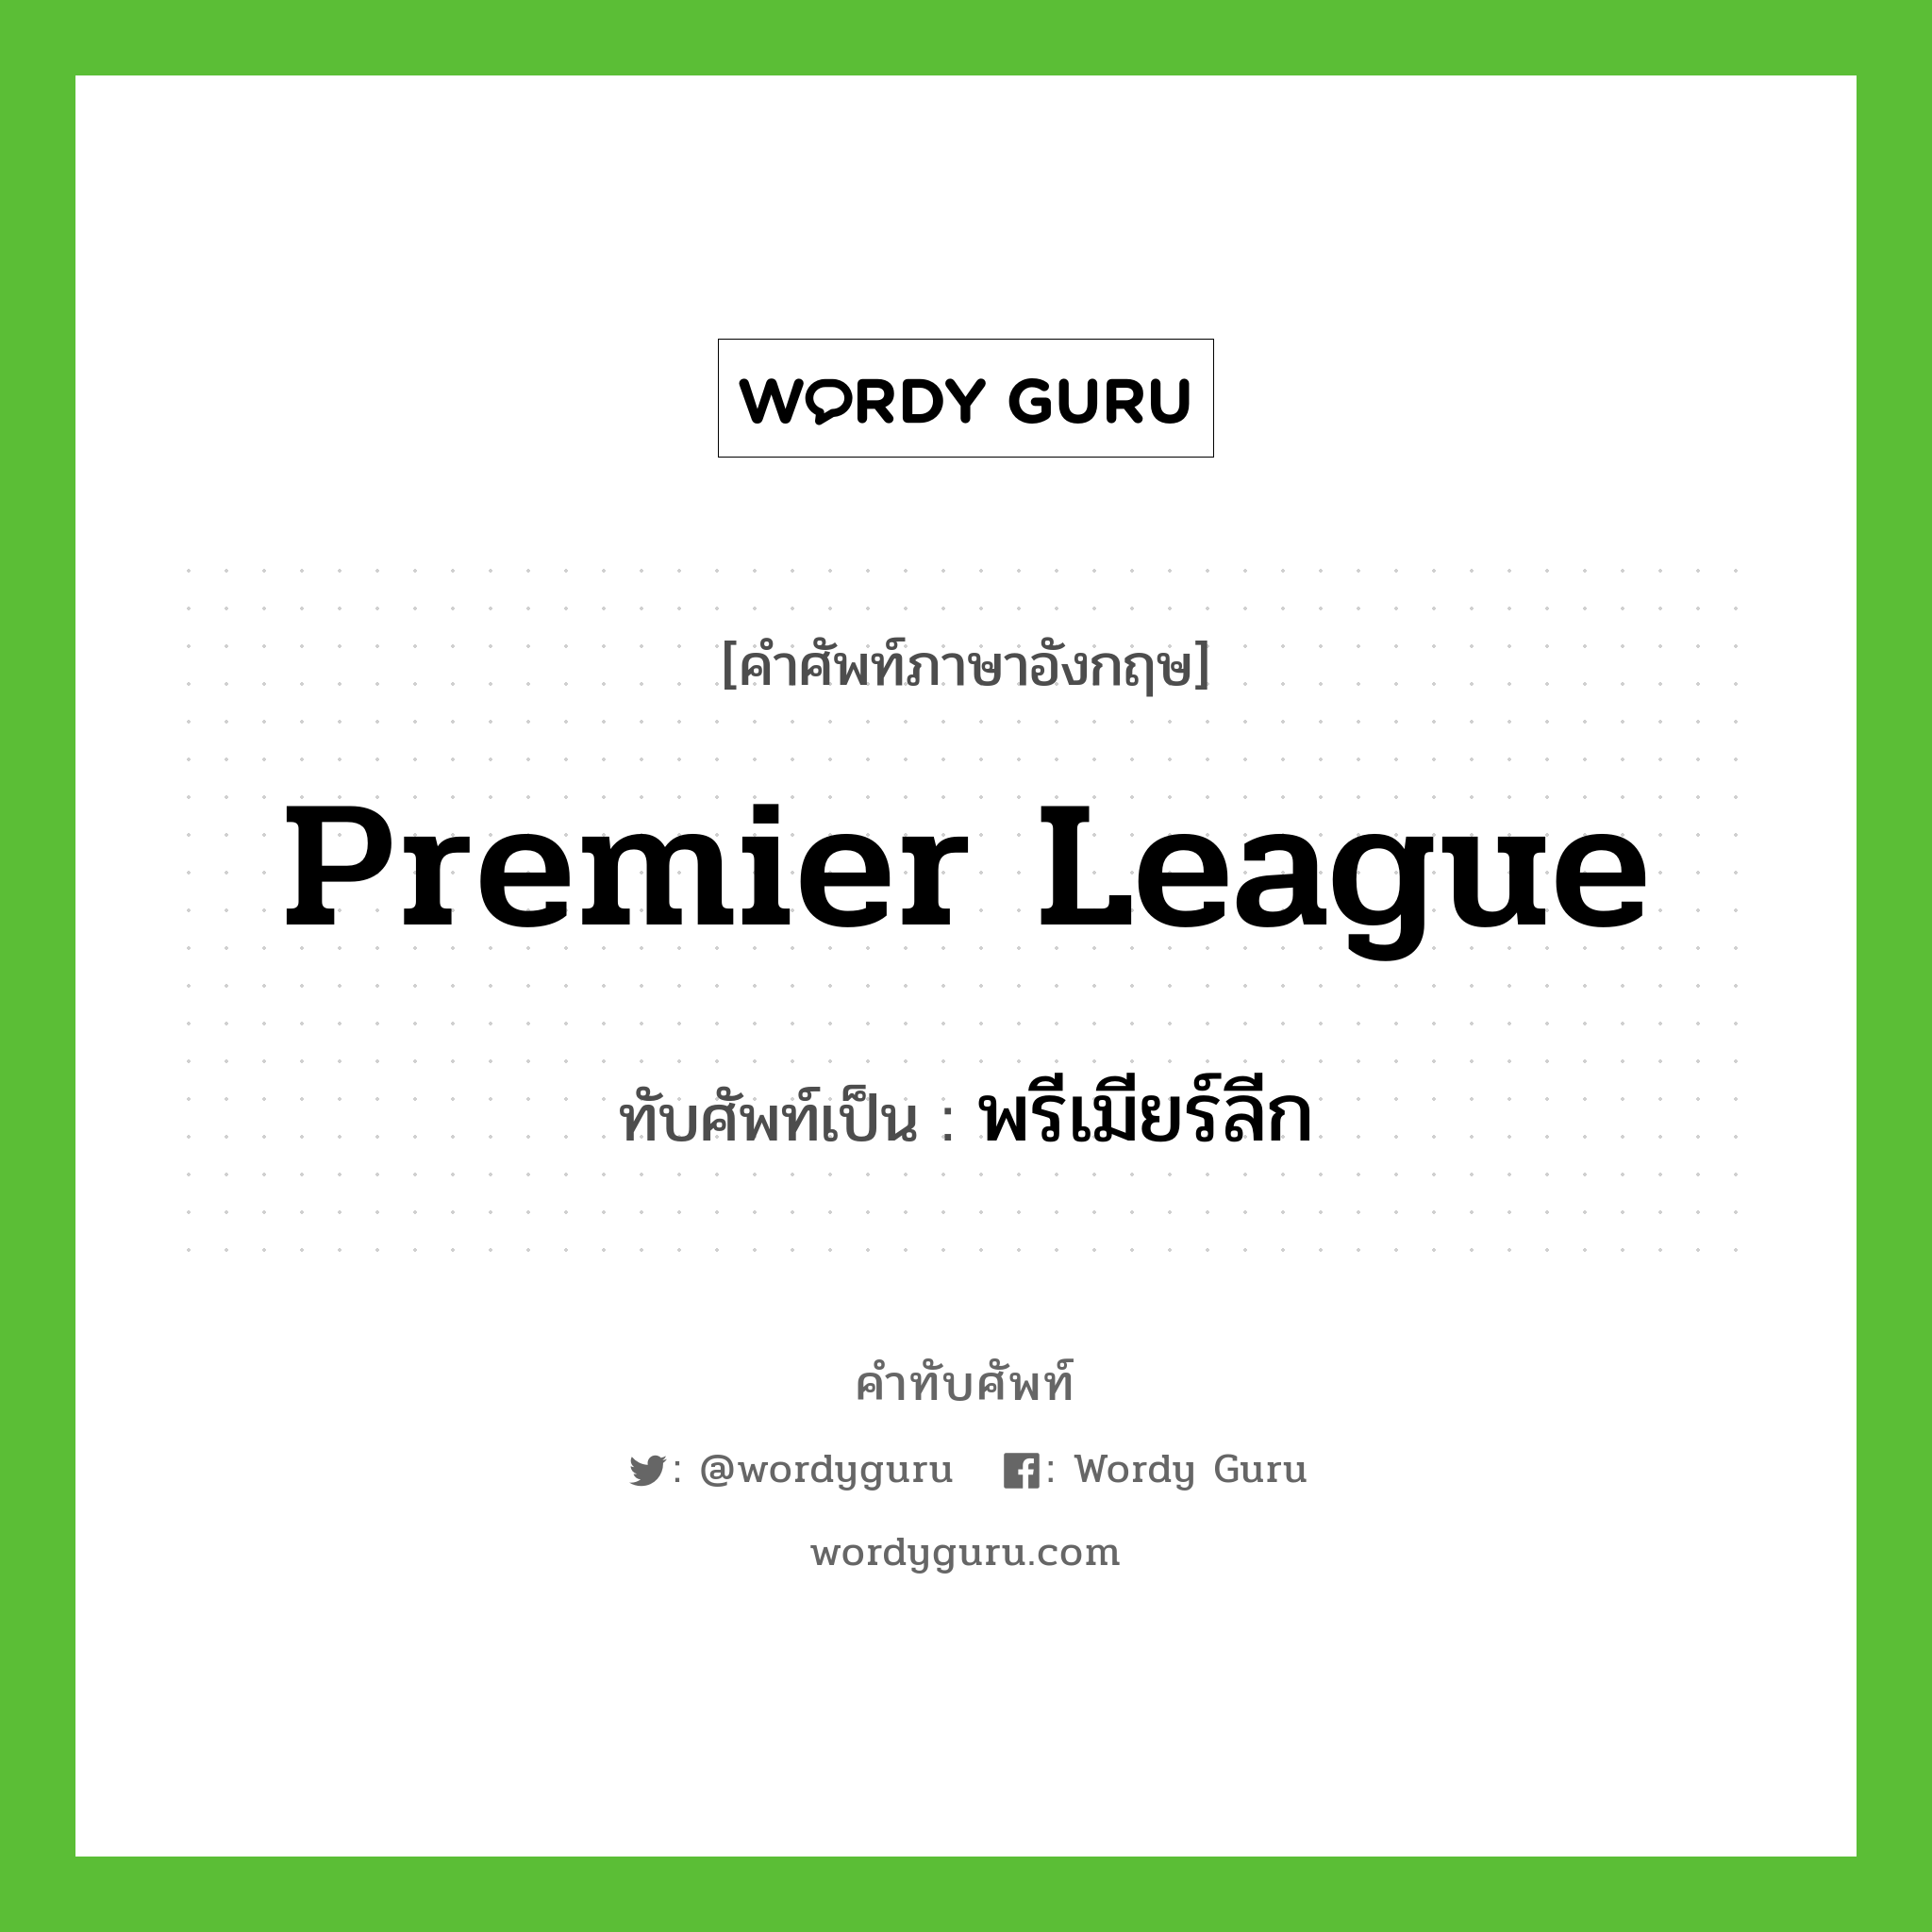 premier league เขียนเป็นคำไทยว่าอะไร?, คำศัพท์ภาษาอังกฤษ premier league ทับศัพท์เป็น พรีเมียร์ลีก